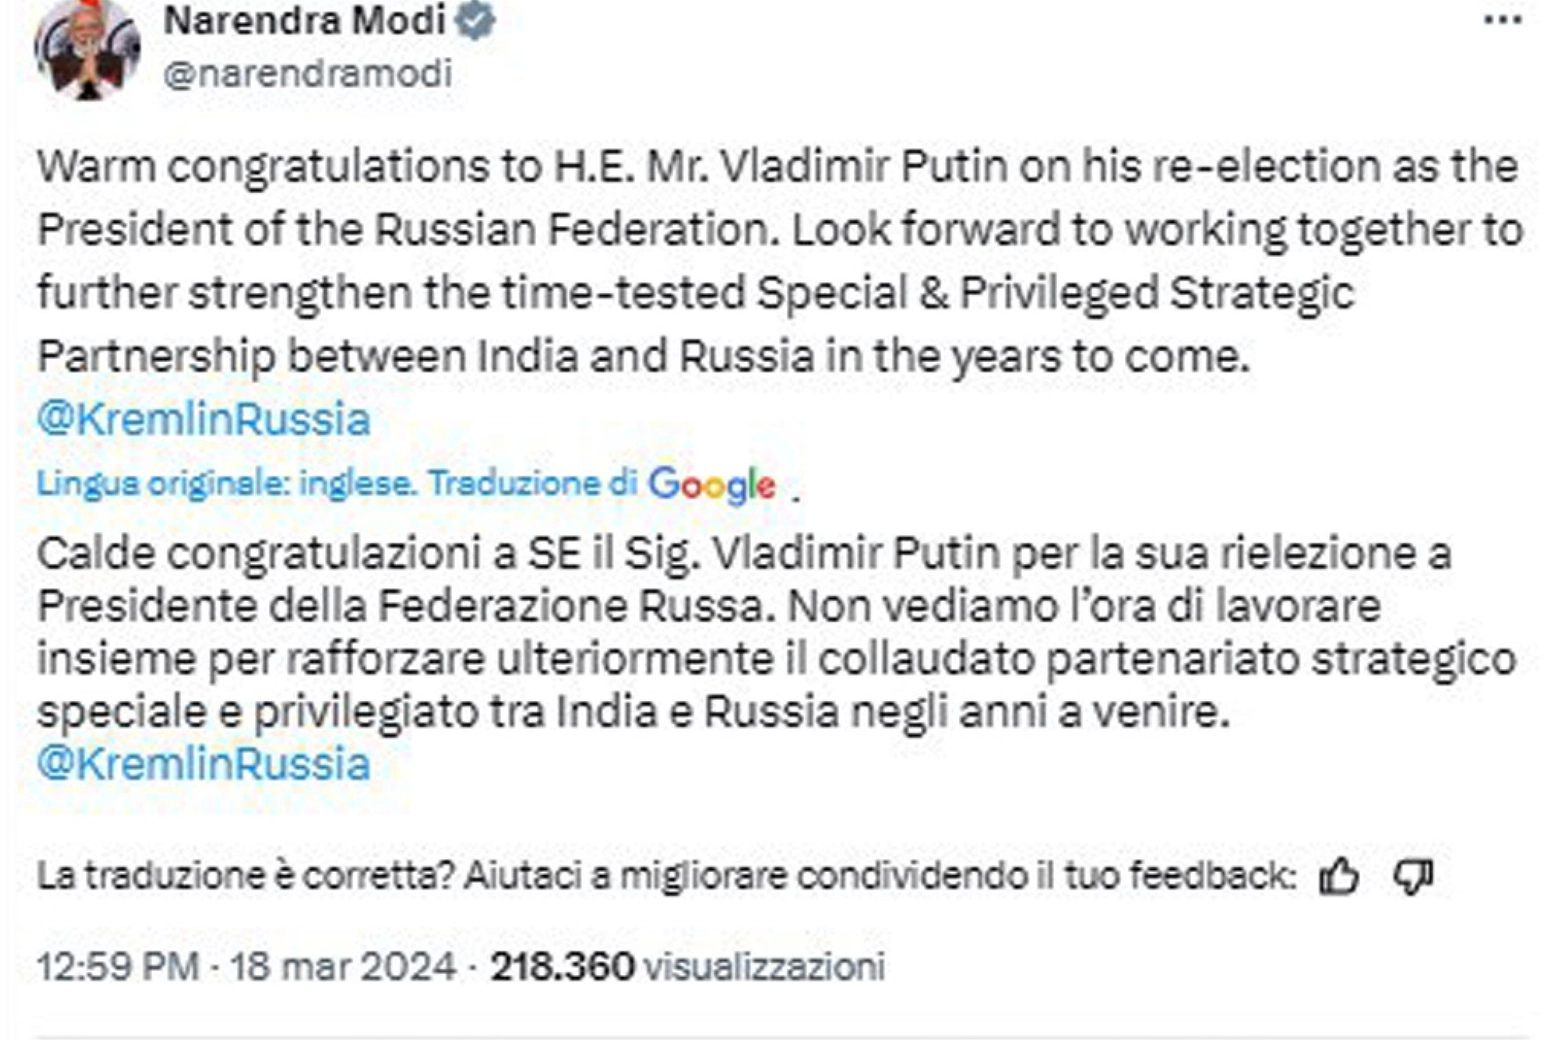 Modi si congratula con Putin sui social: 'Rafforzare partenariato'